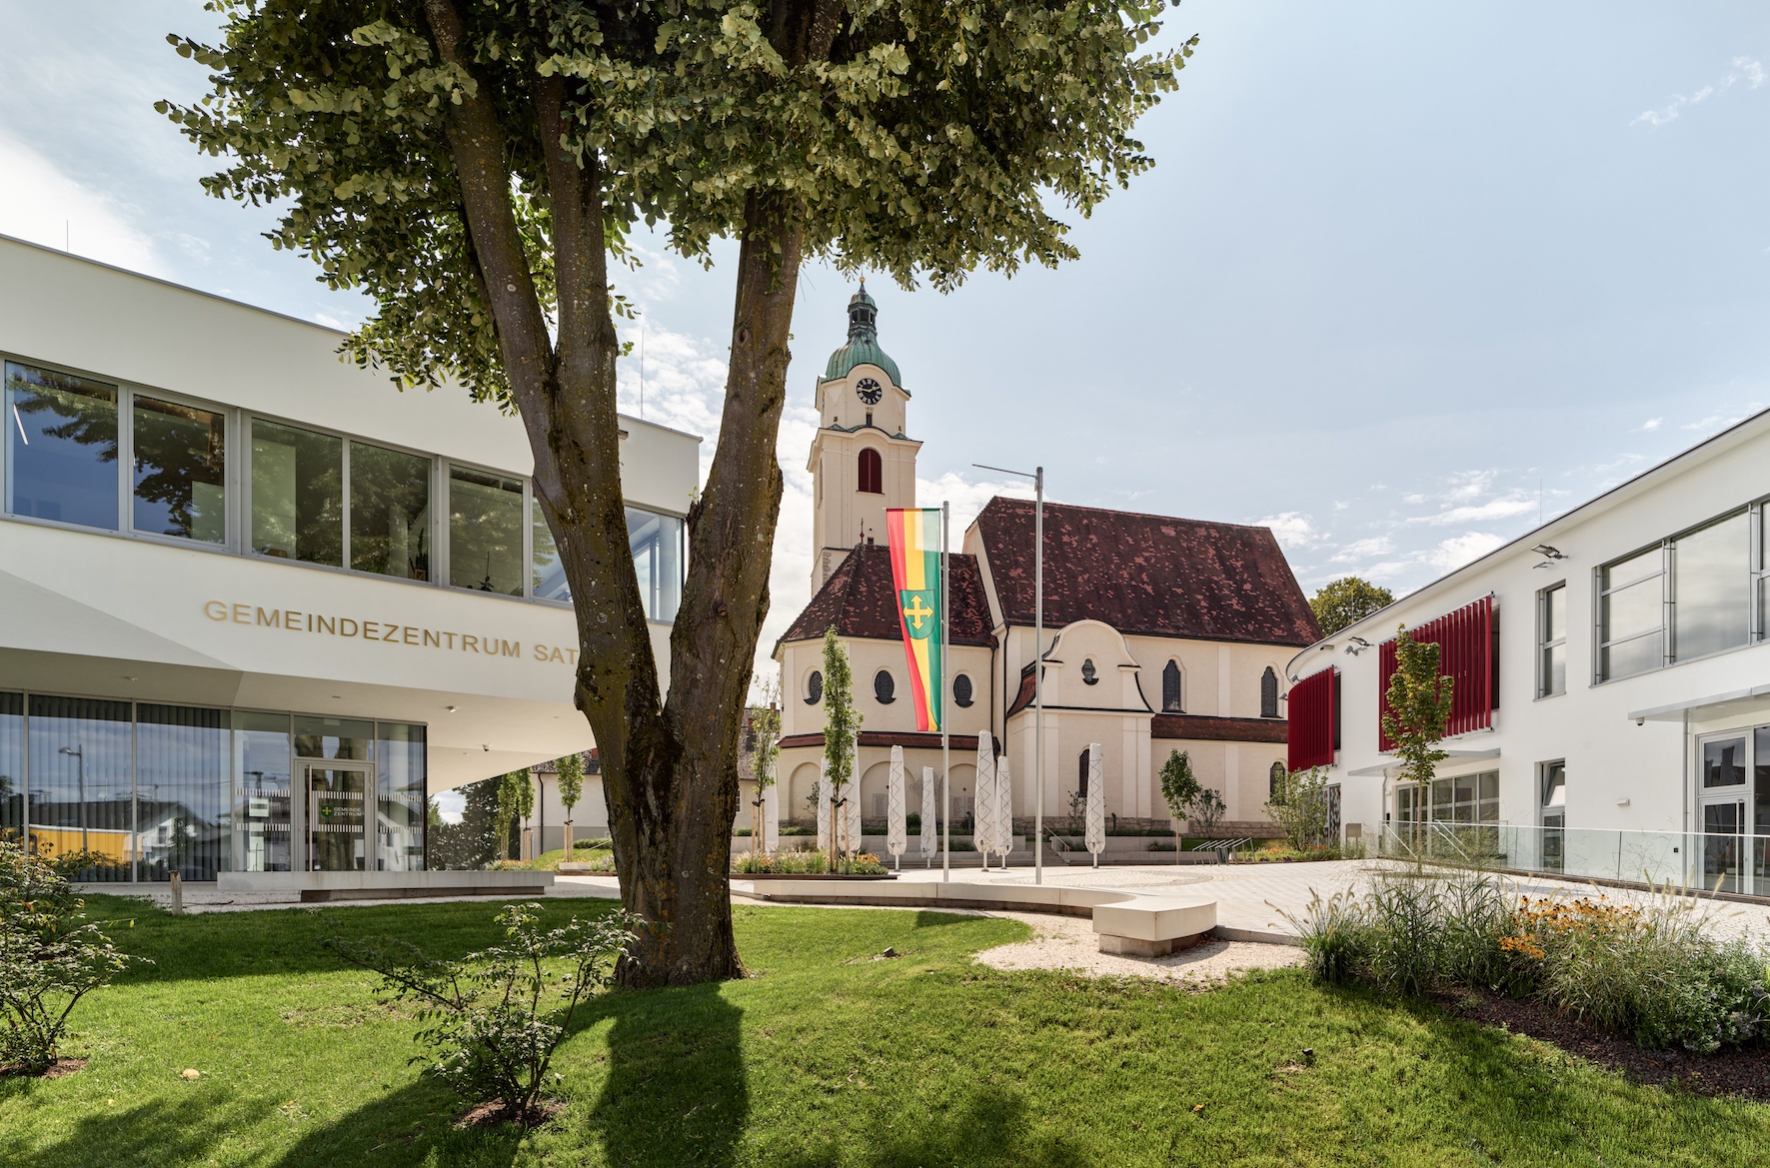 Gemeindezentrum | Kommunalbau mit Bibliothek, dreigruppige Krabbelgruppe und Gastronmie | Ortzsplatz